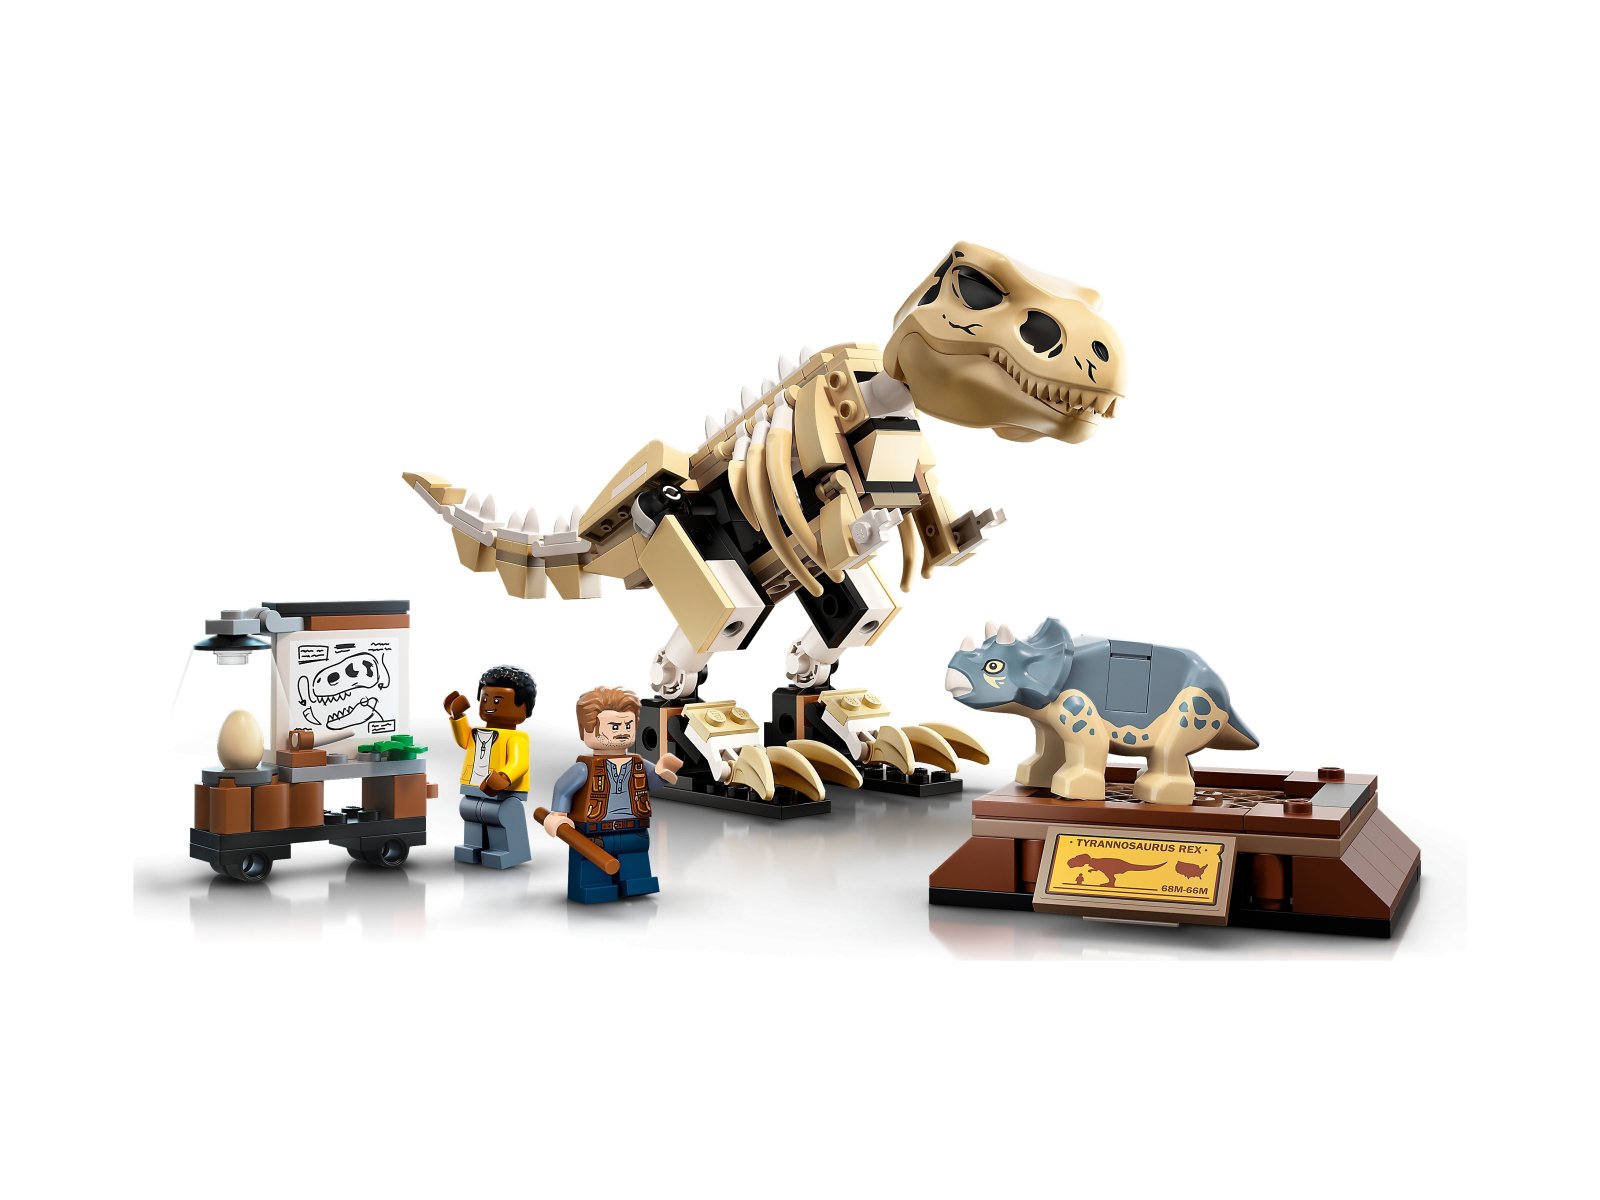 LEGO Jurassic World Wystawa skamieniałości tyranozaura 76940